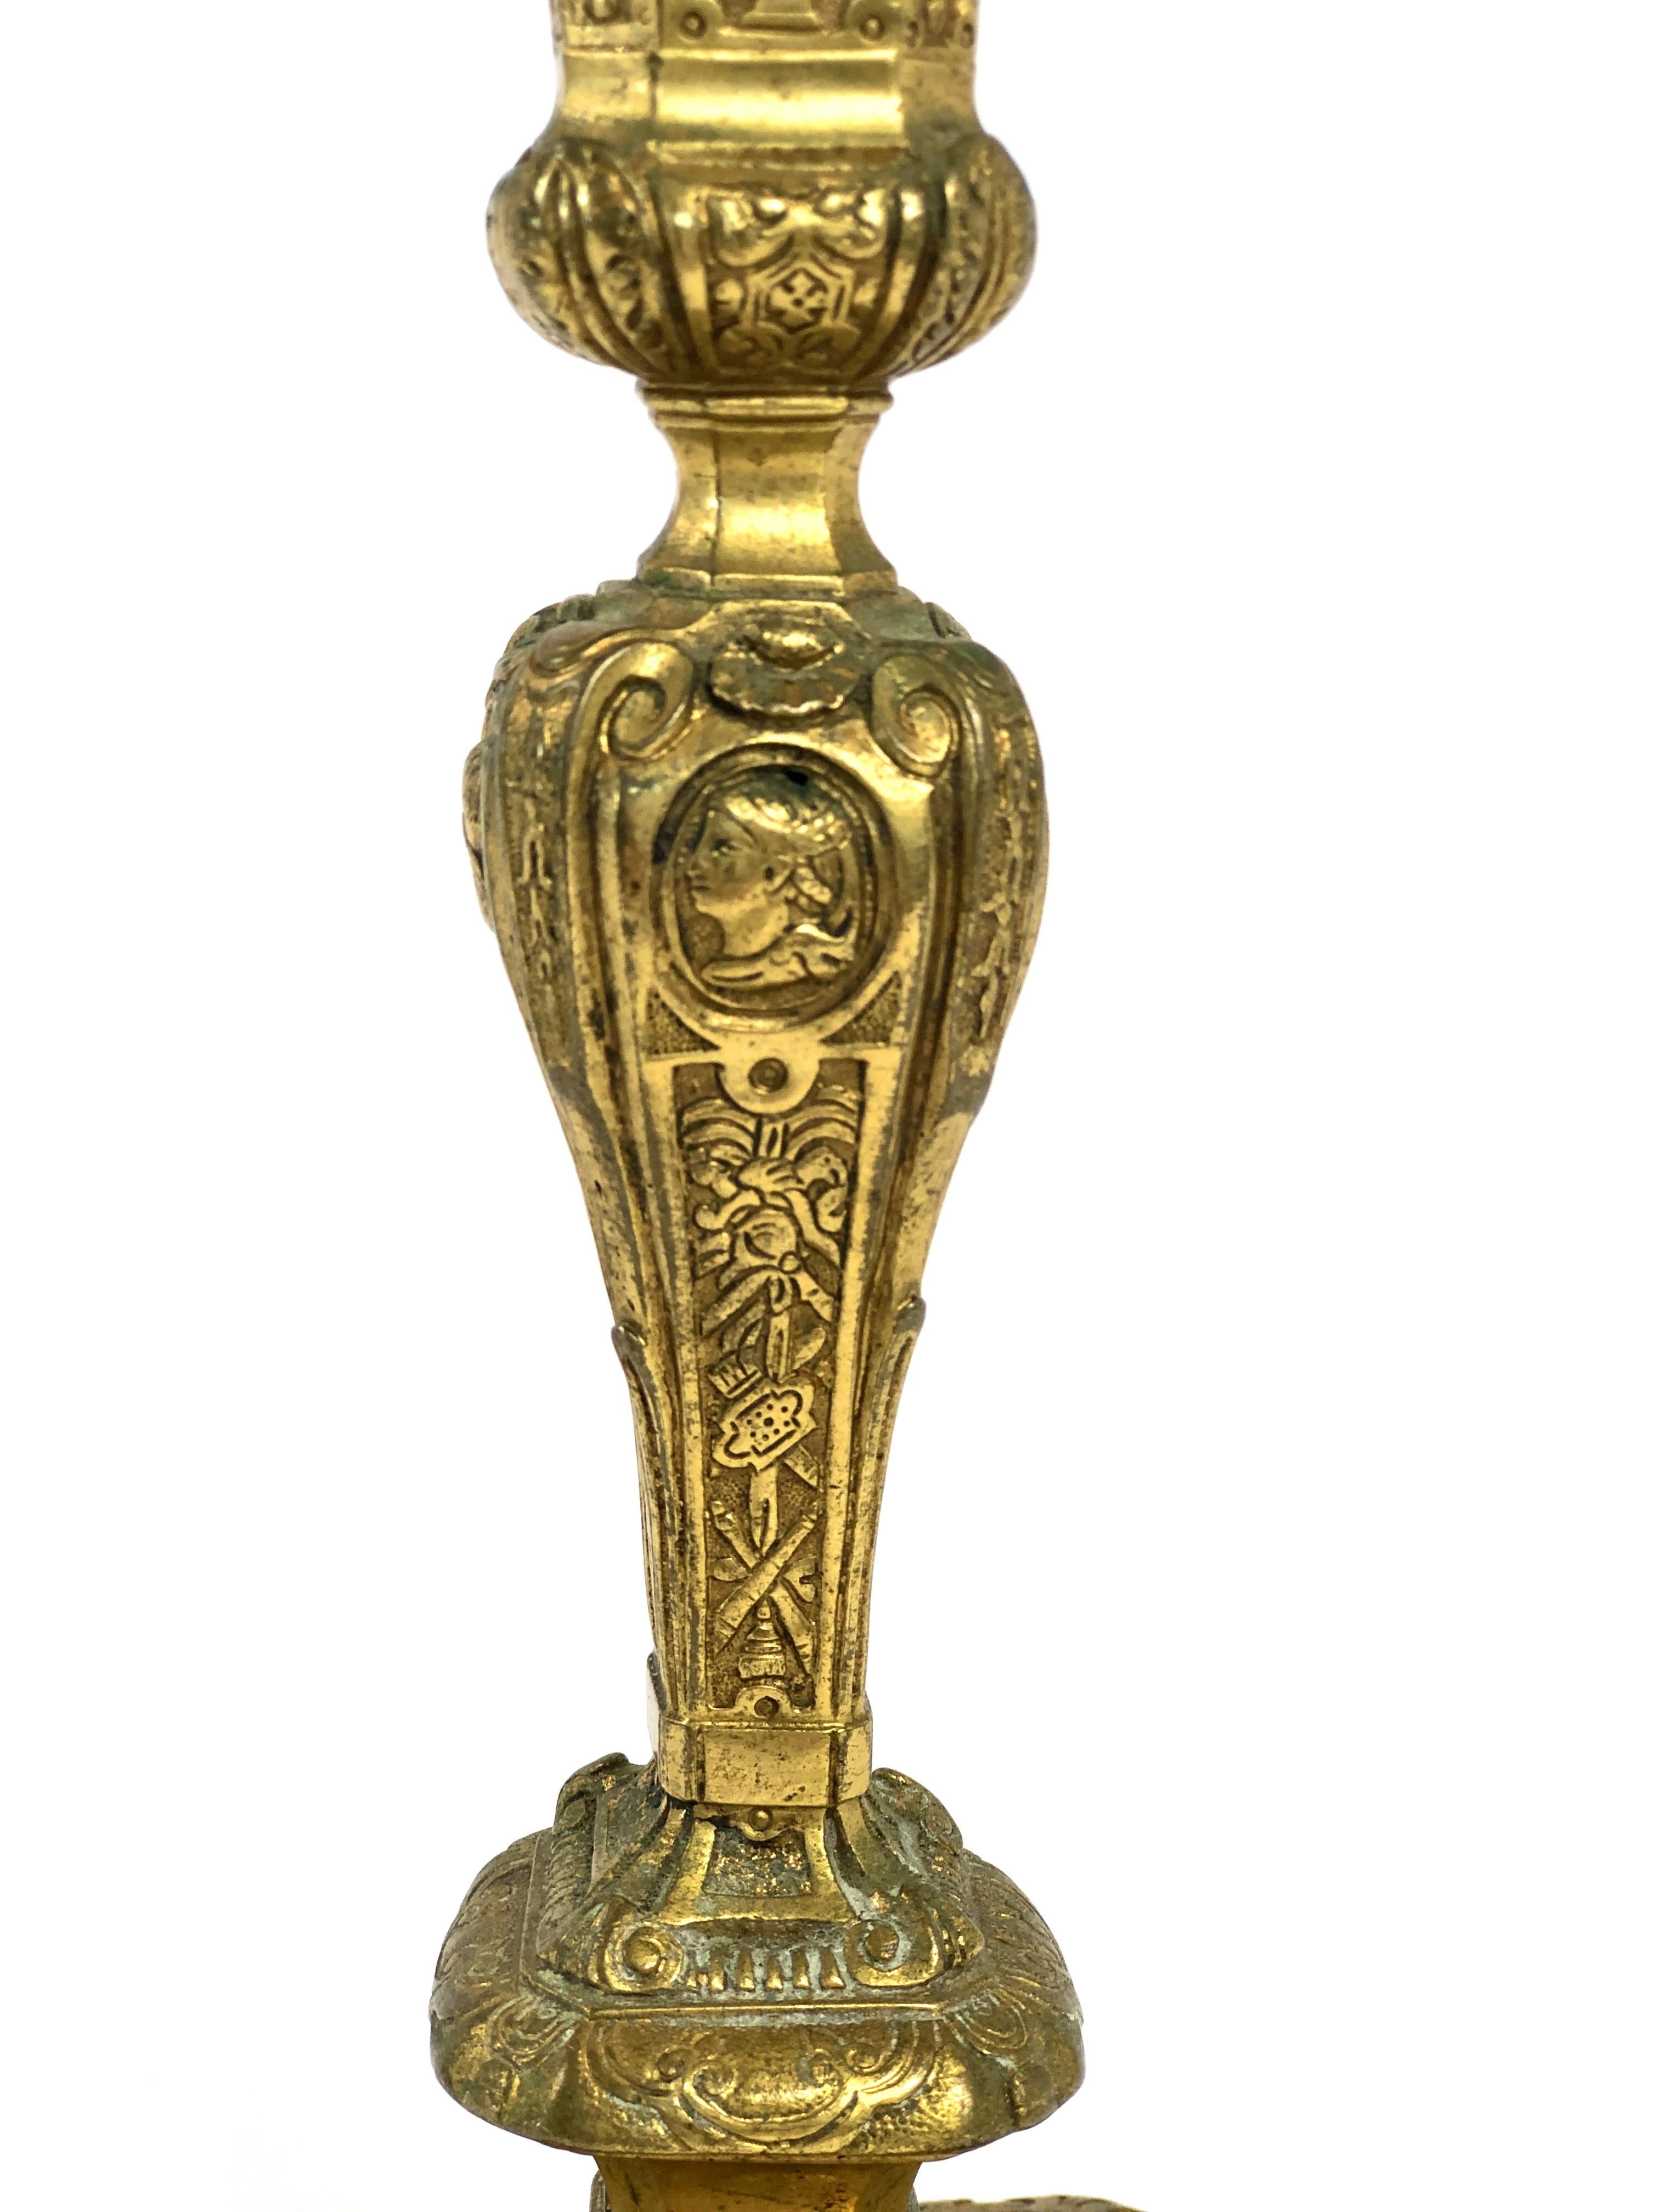 Ein prächtiger Kerzenhalter im Stil Ludwigs XIV. aus dem 19. Jahrhundert, aus fein ziselierter und vergoldeter Bronze. Der balusterförmige Korpus ist reich verziert mit Schwaden und Wirbeln, Vasenmotiven, Fantasiewesen, Draperien und